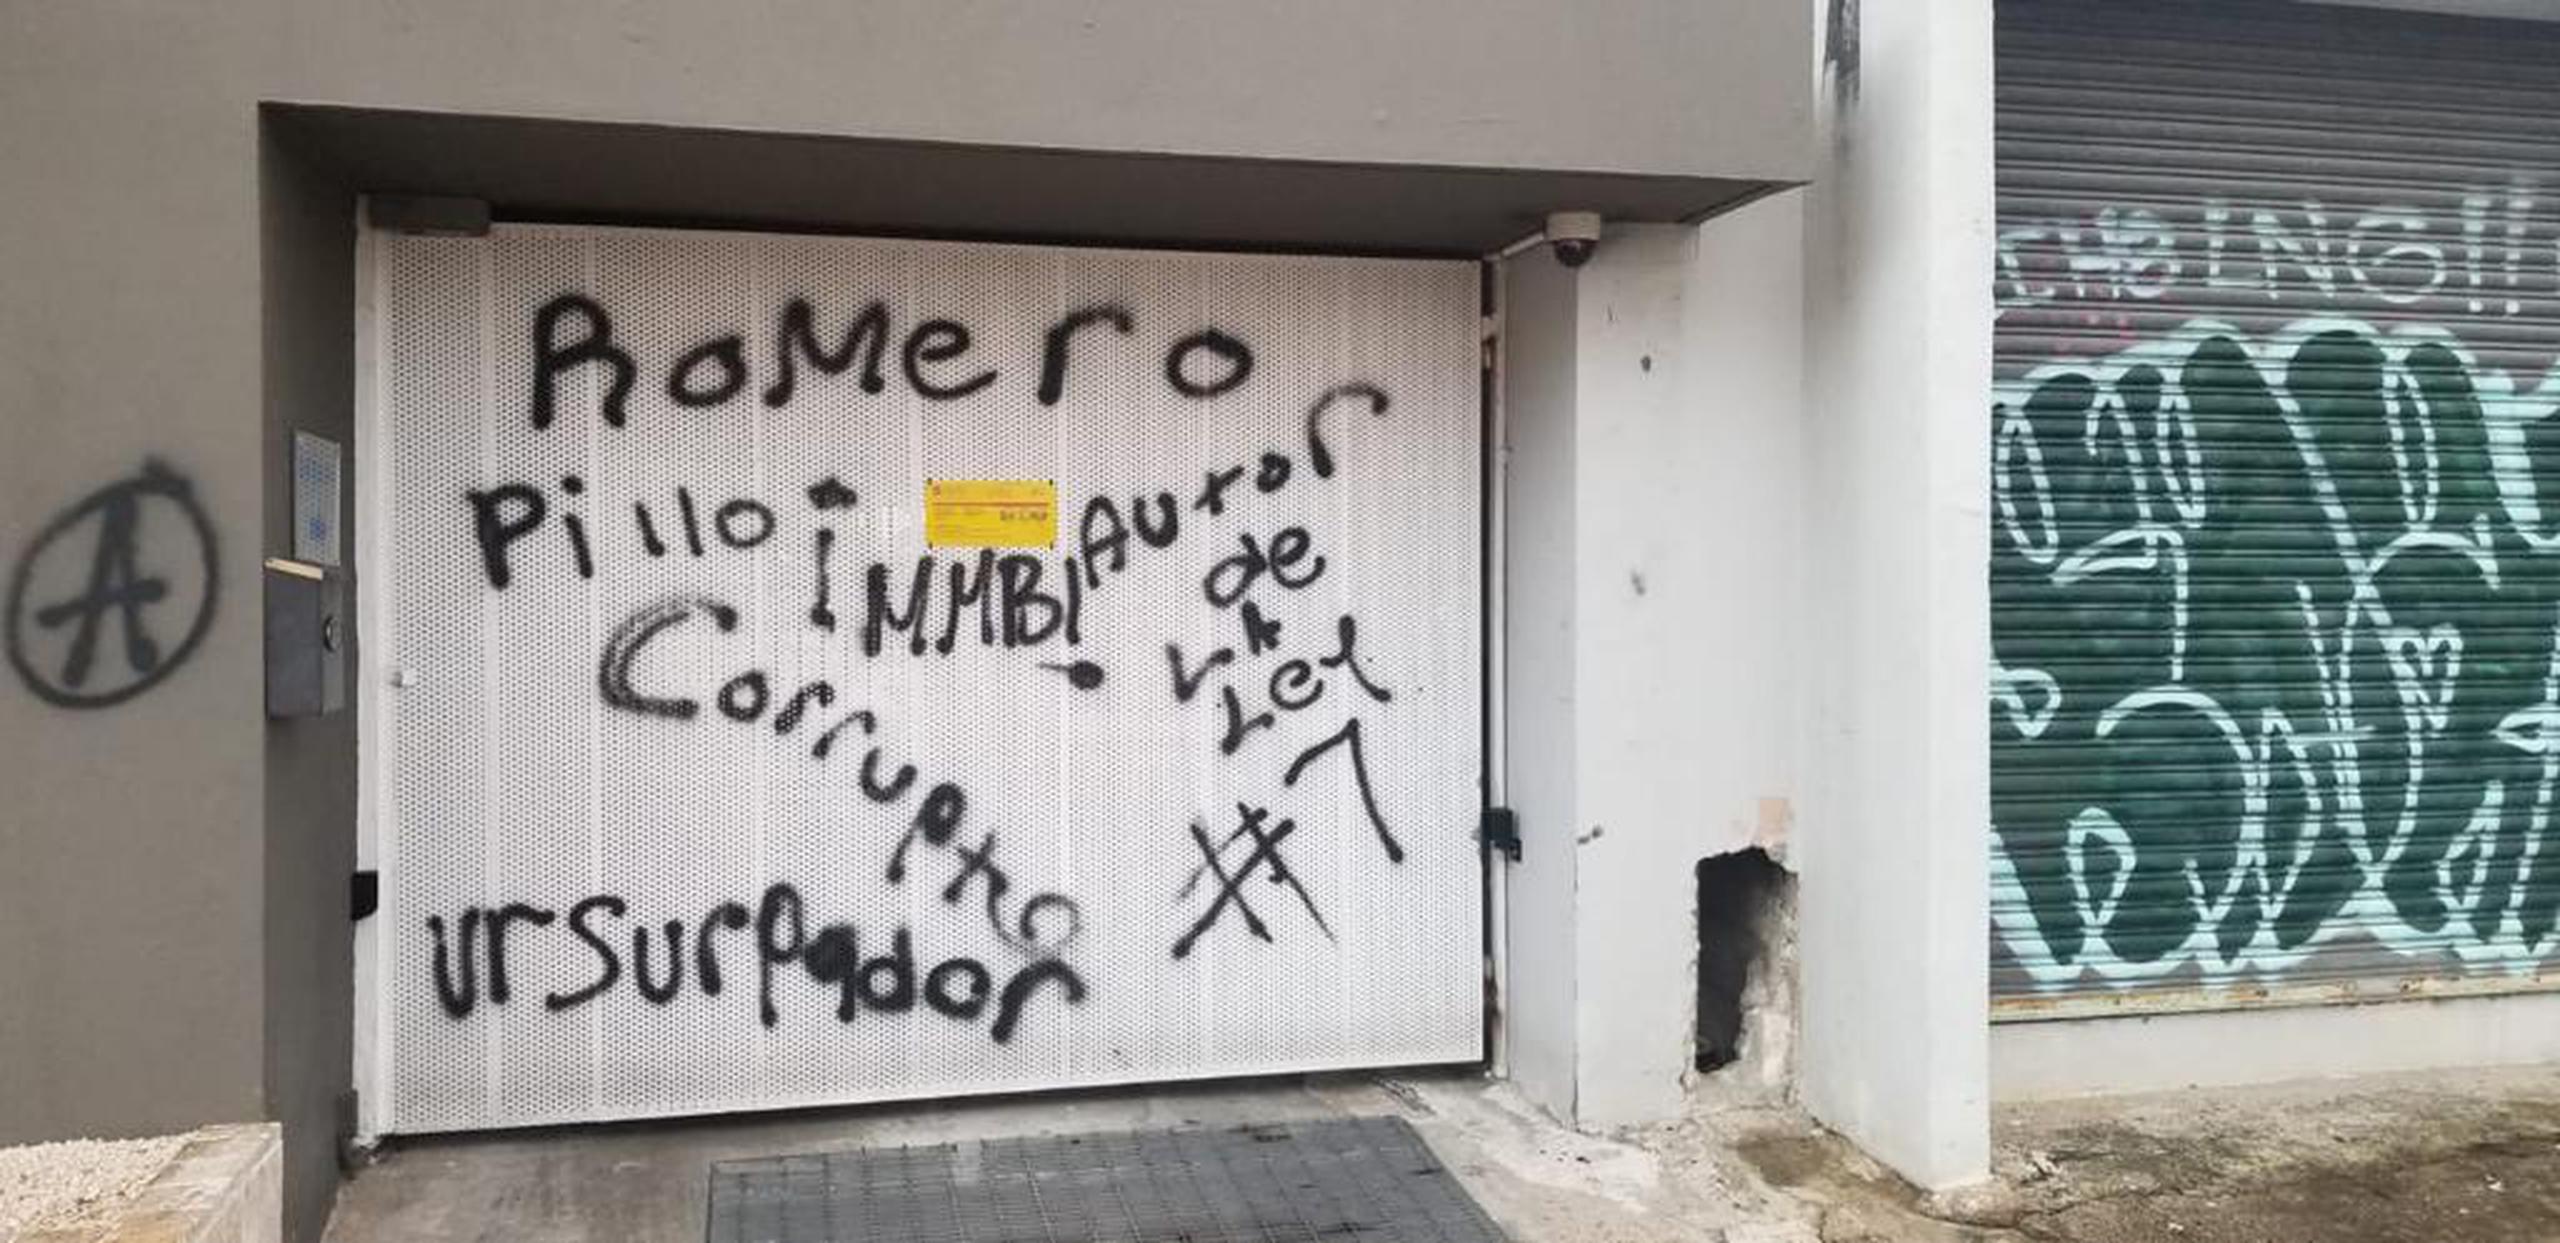 El antiguo de campaña del alcalde de San Juan, Miguel Romero, fue vandalizado con mensajes que fueron pintados con aerosol por un individuo que fue arrestado.